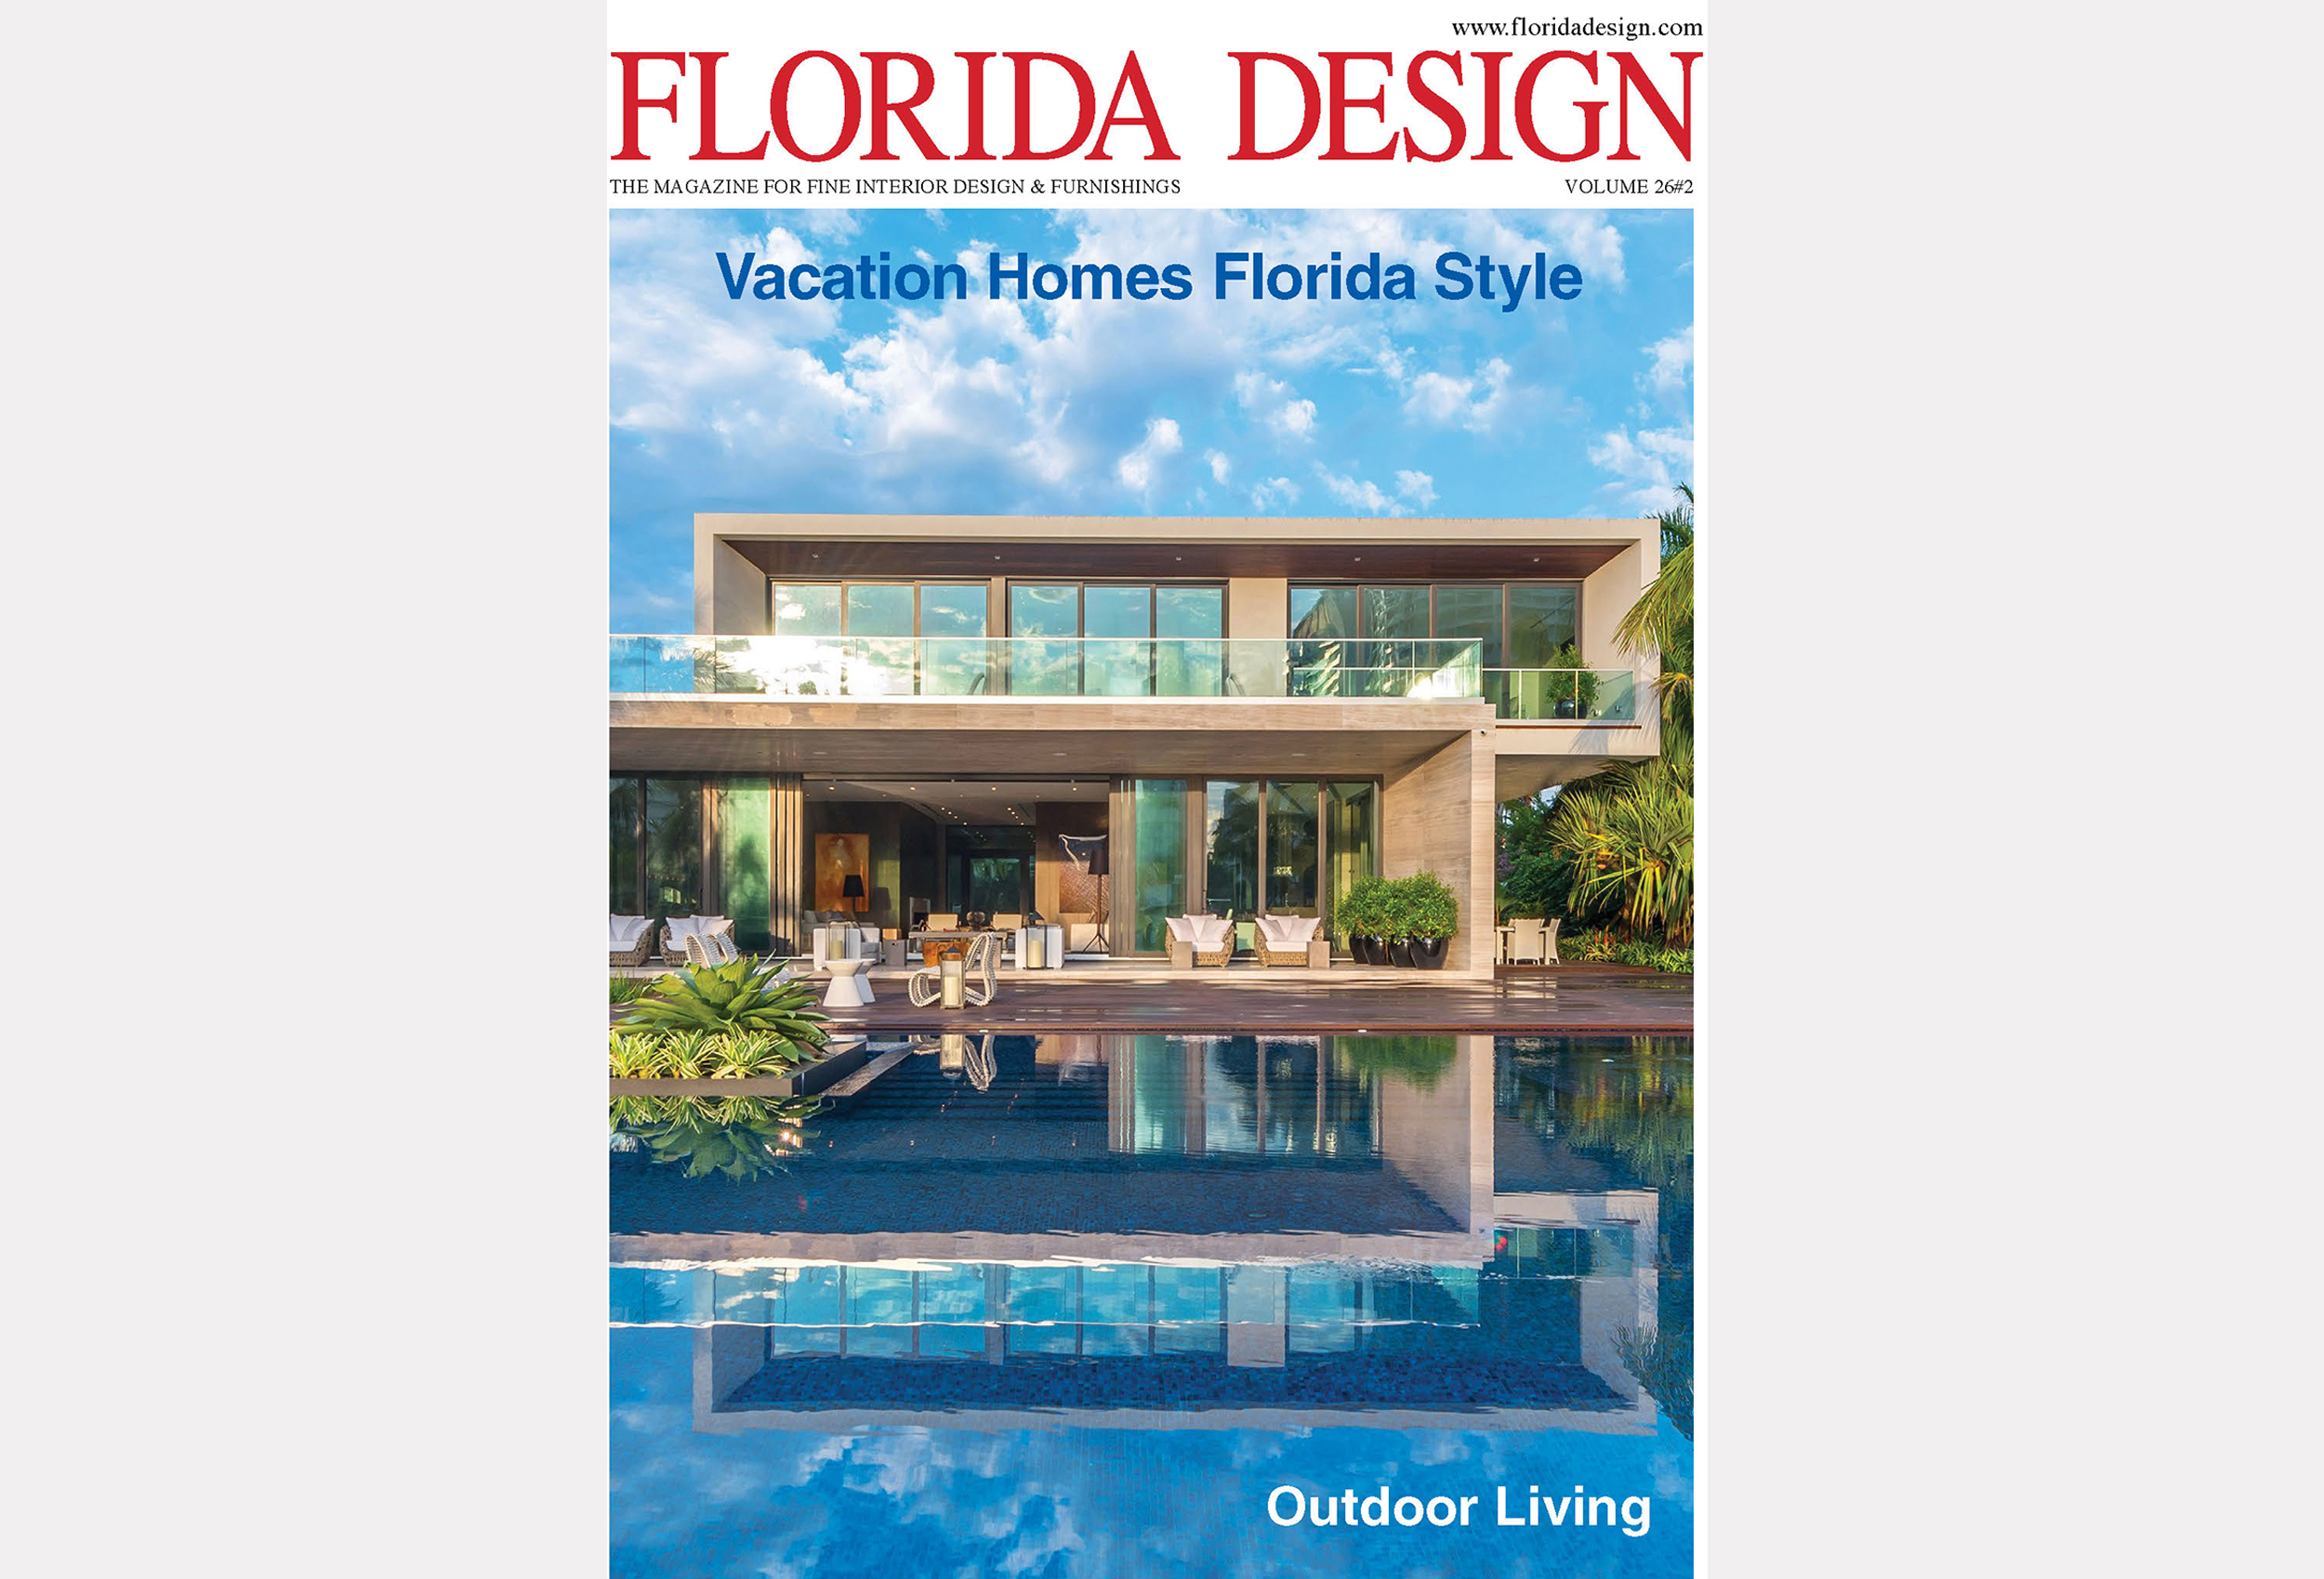 Florida Design